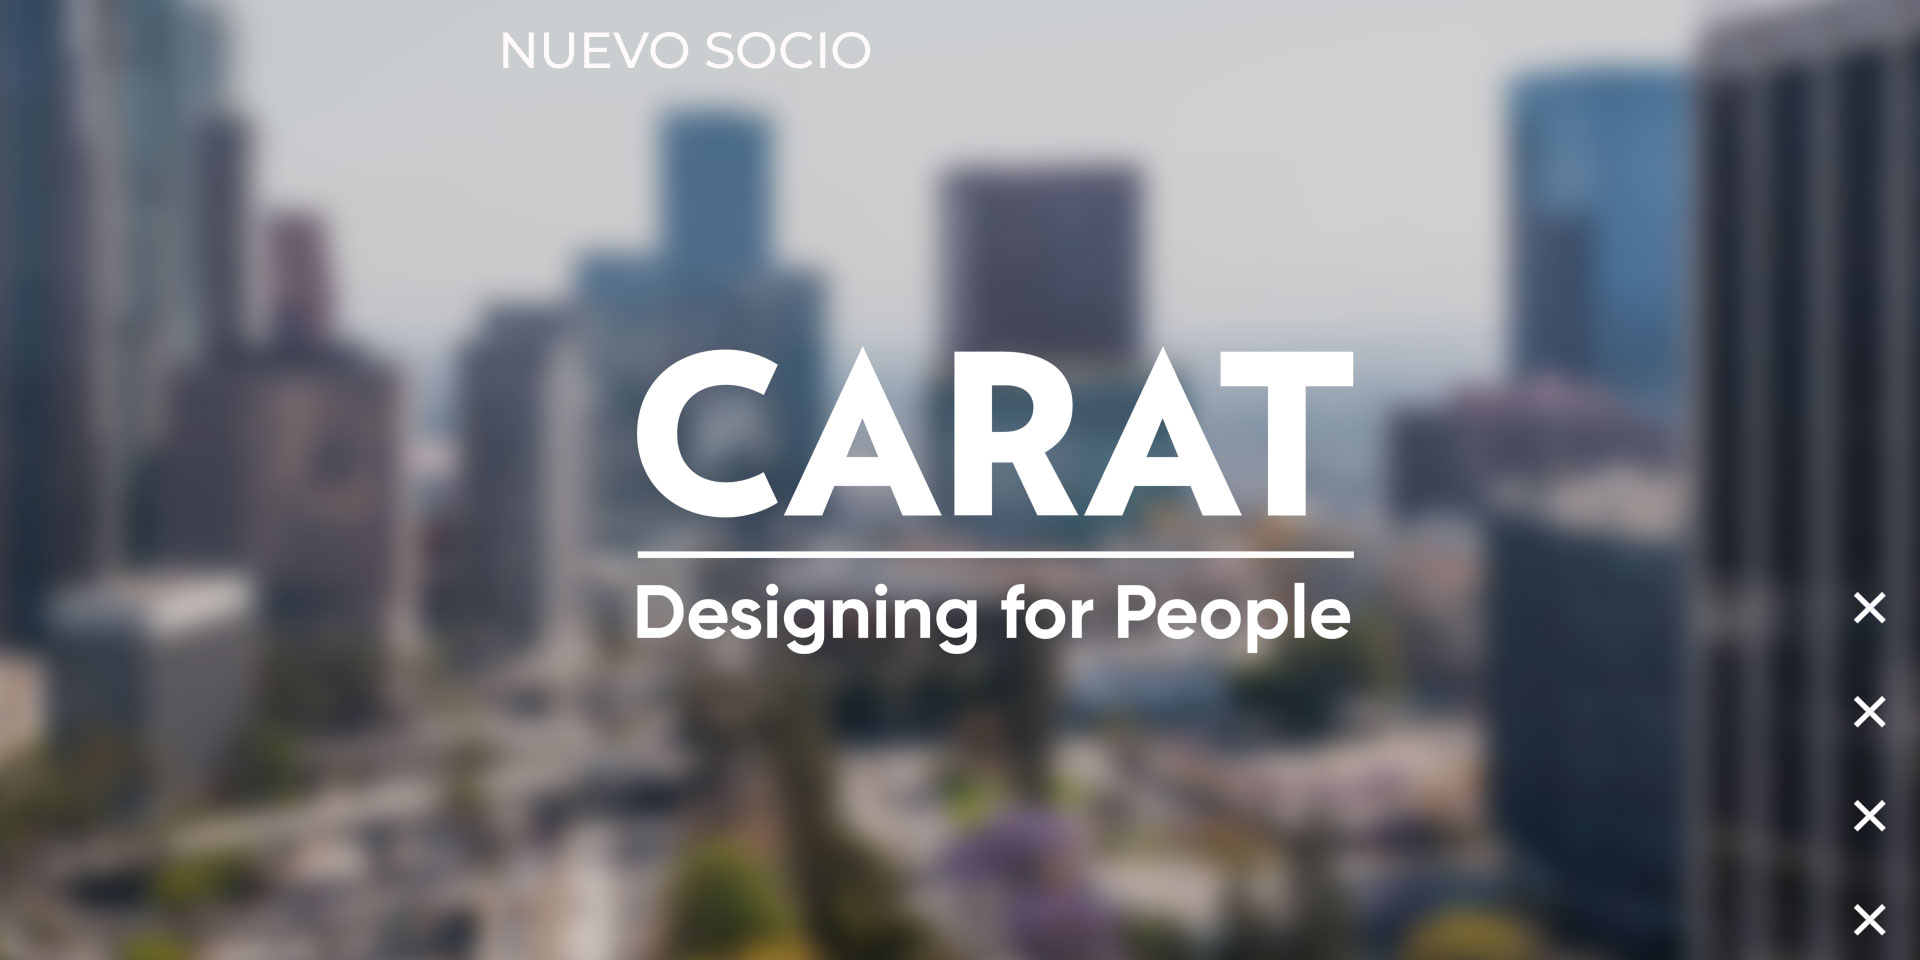 Carat, nueva empresa socia de la AMDD